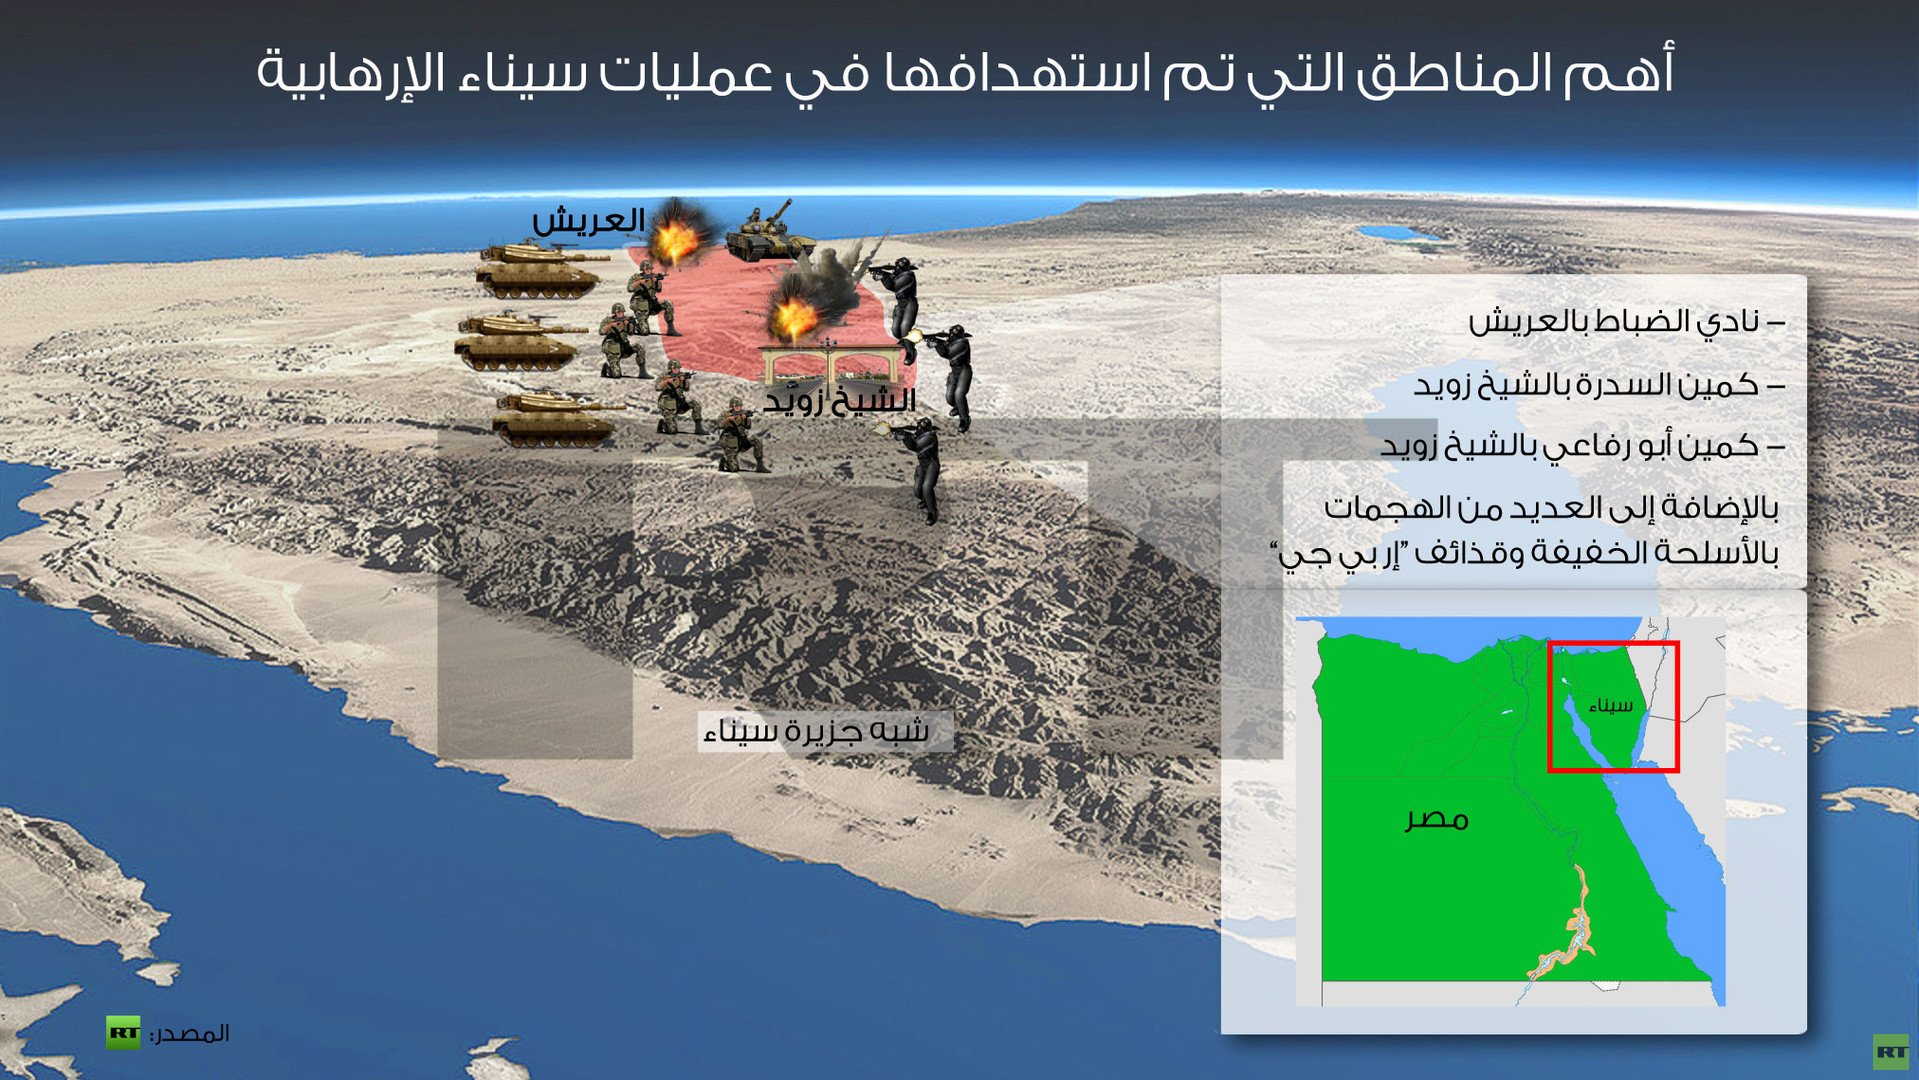 انفوجرافيك: أهم المناطق التي تم استهدافها في عمليات سيناء الإرهابية